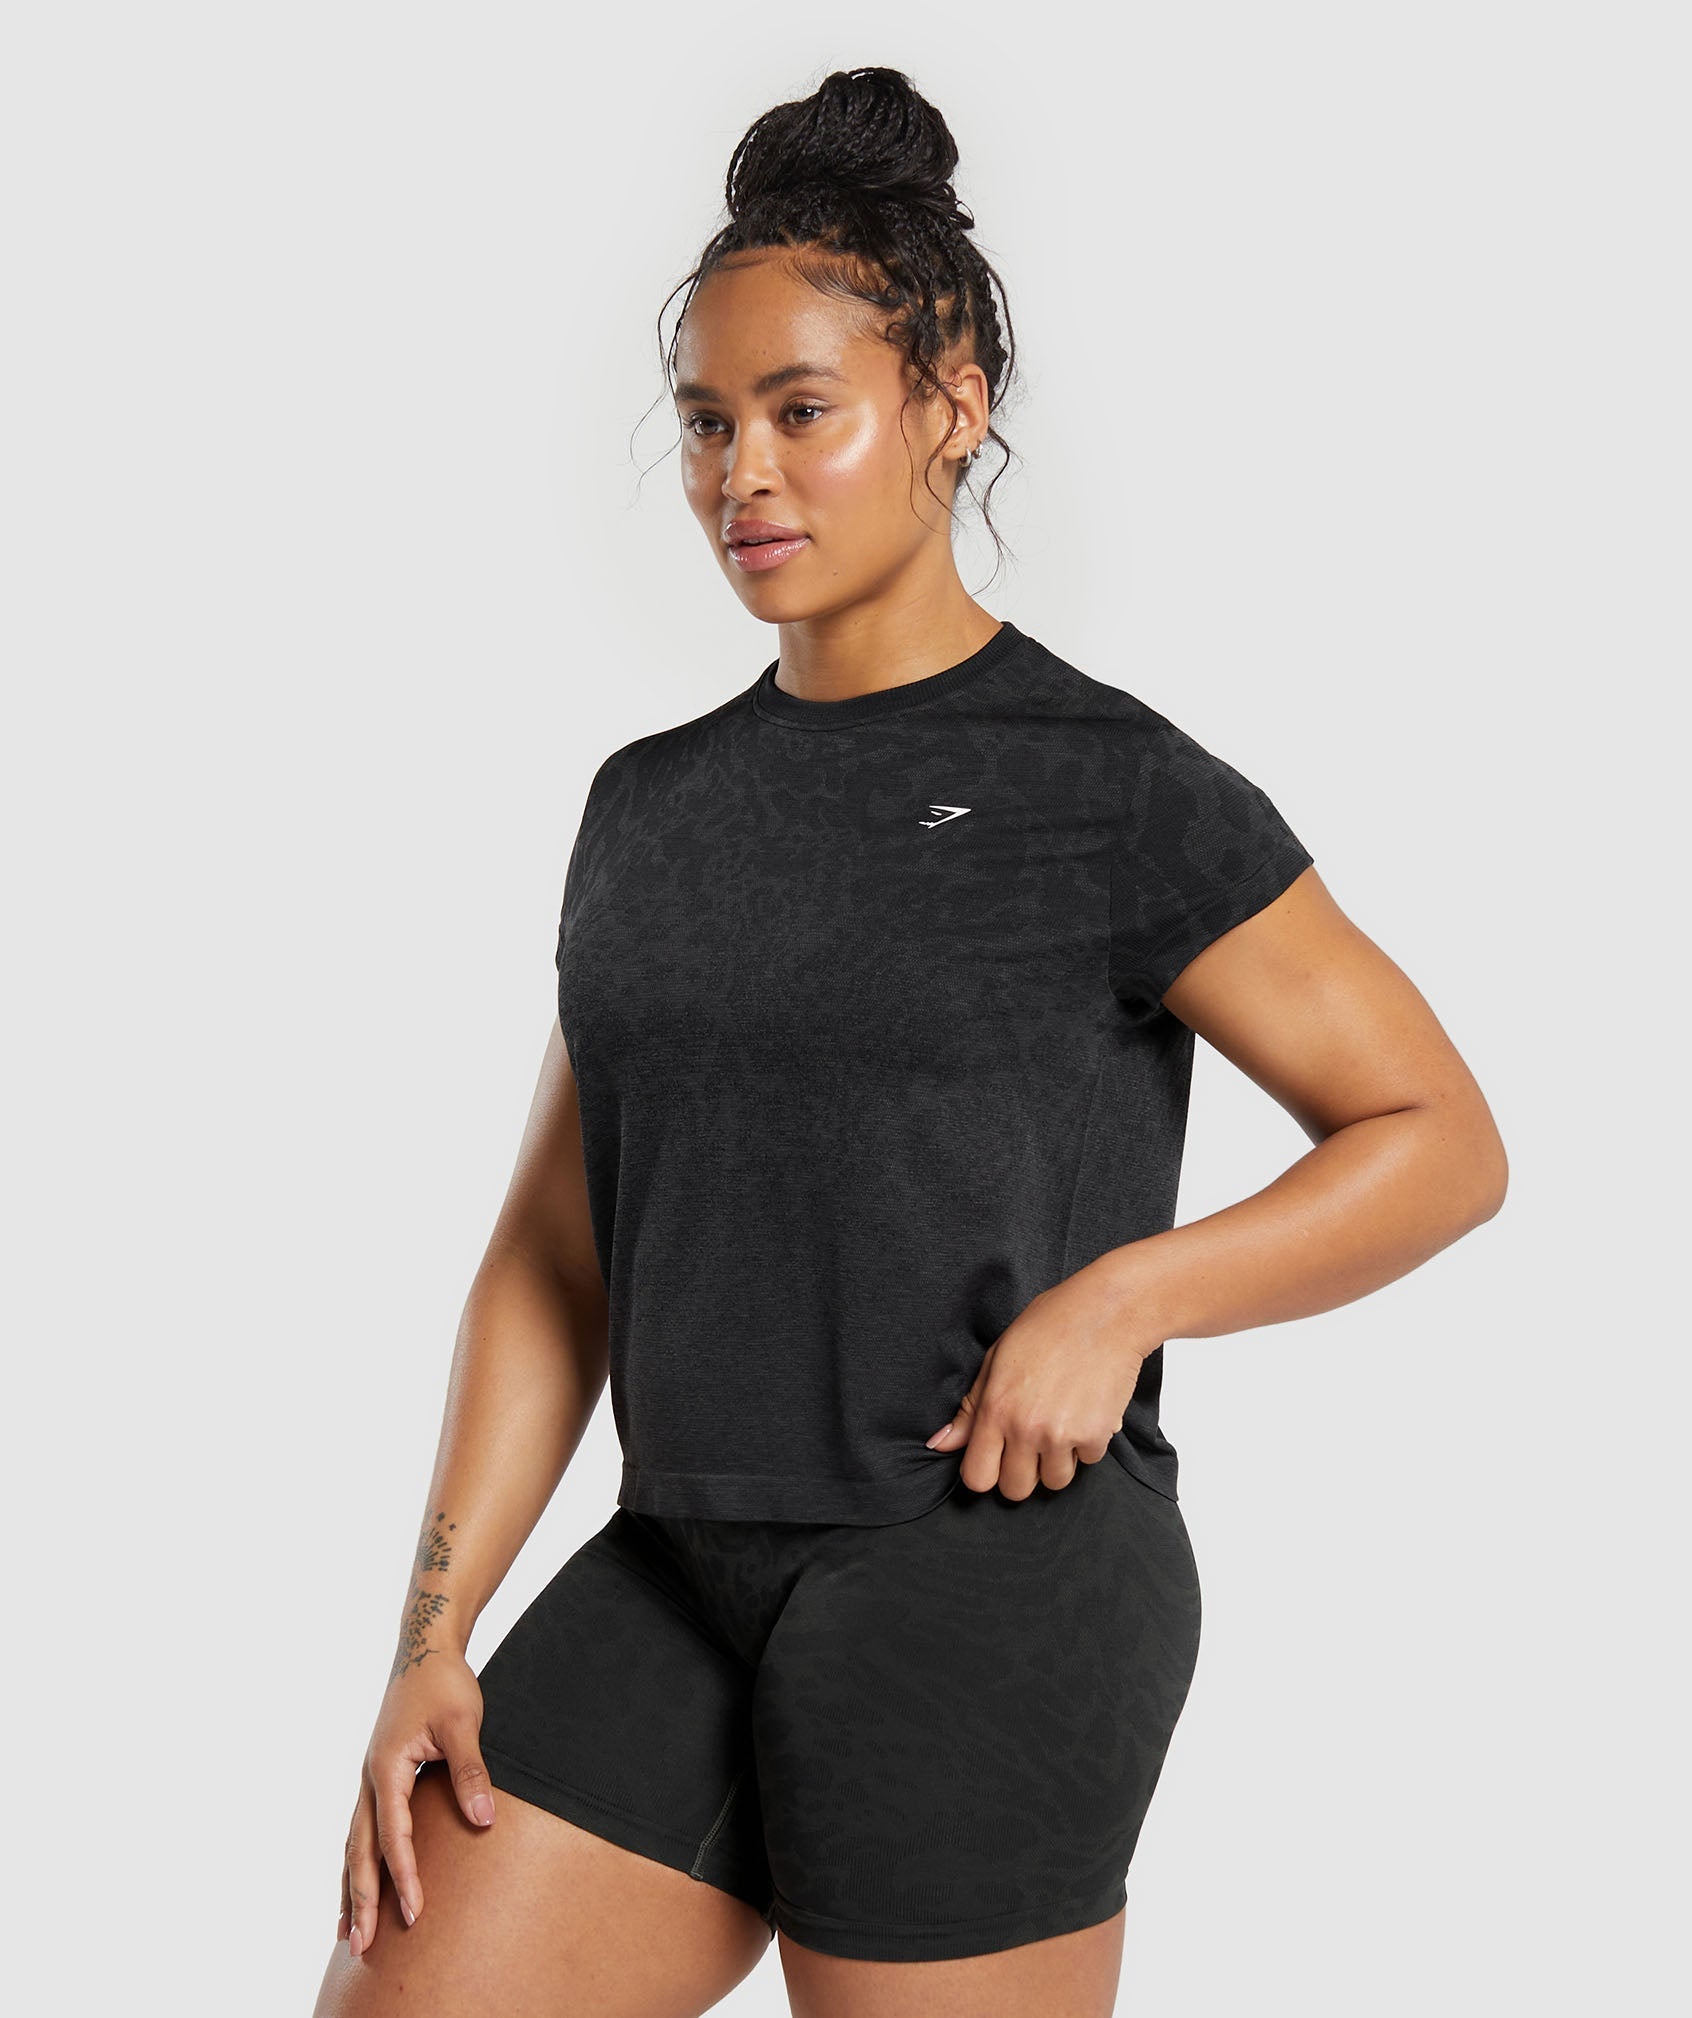 Women's Short Sleeve Workout Shirts & Tops - Gymshark